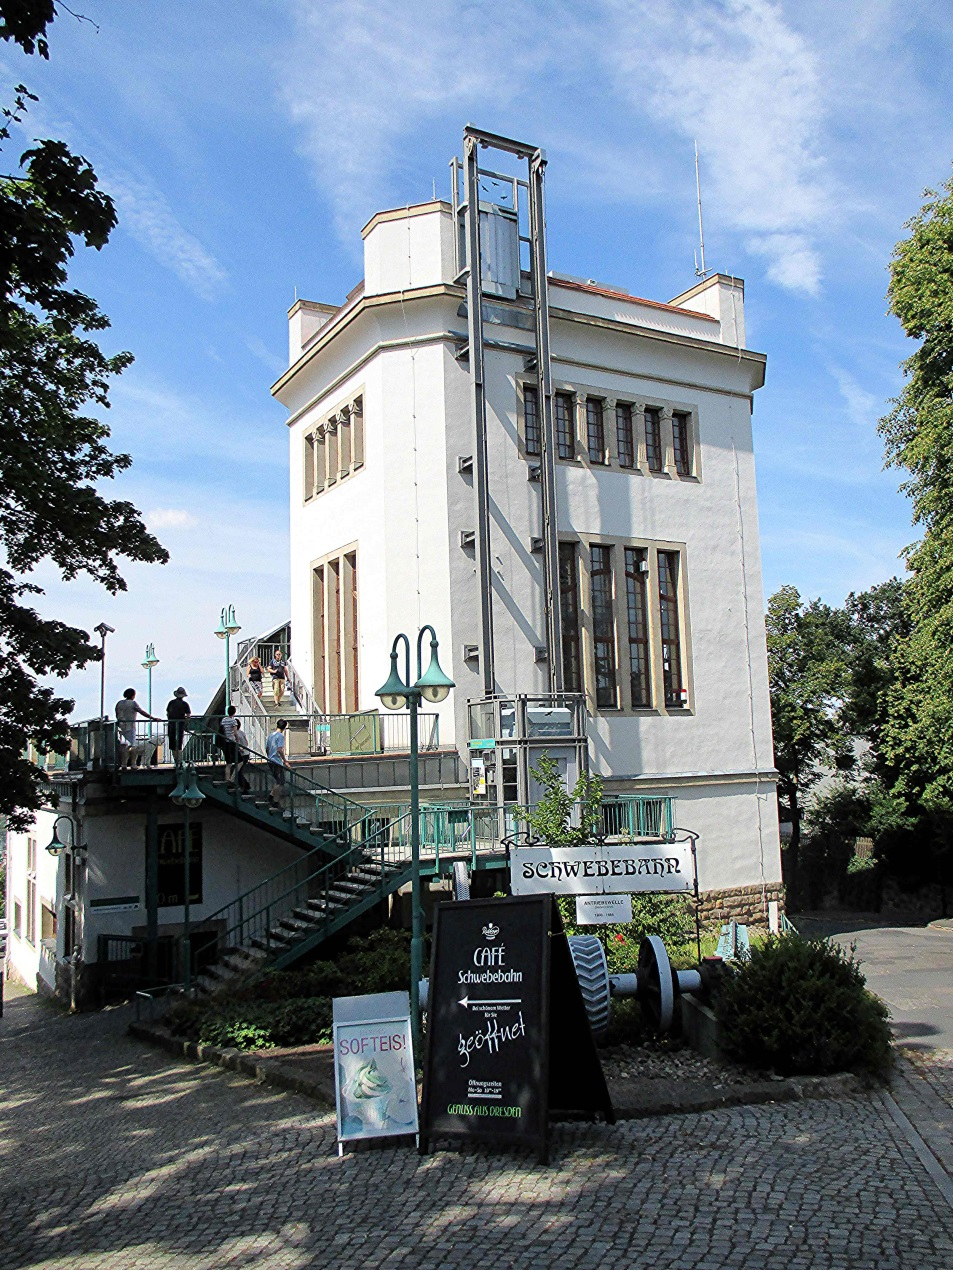 Heute gibt es einen Aufzug zur Aussichtsplattform und unten eine Terrassen-Gaststätte, die das frühere Ausflugslokal